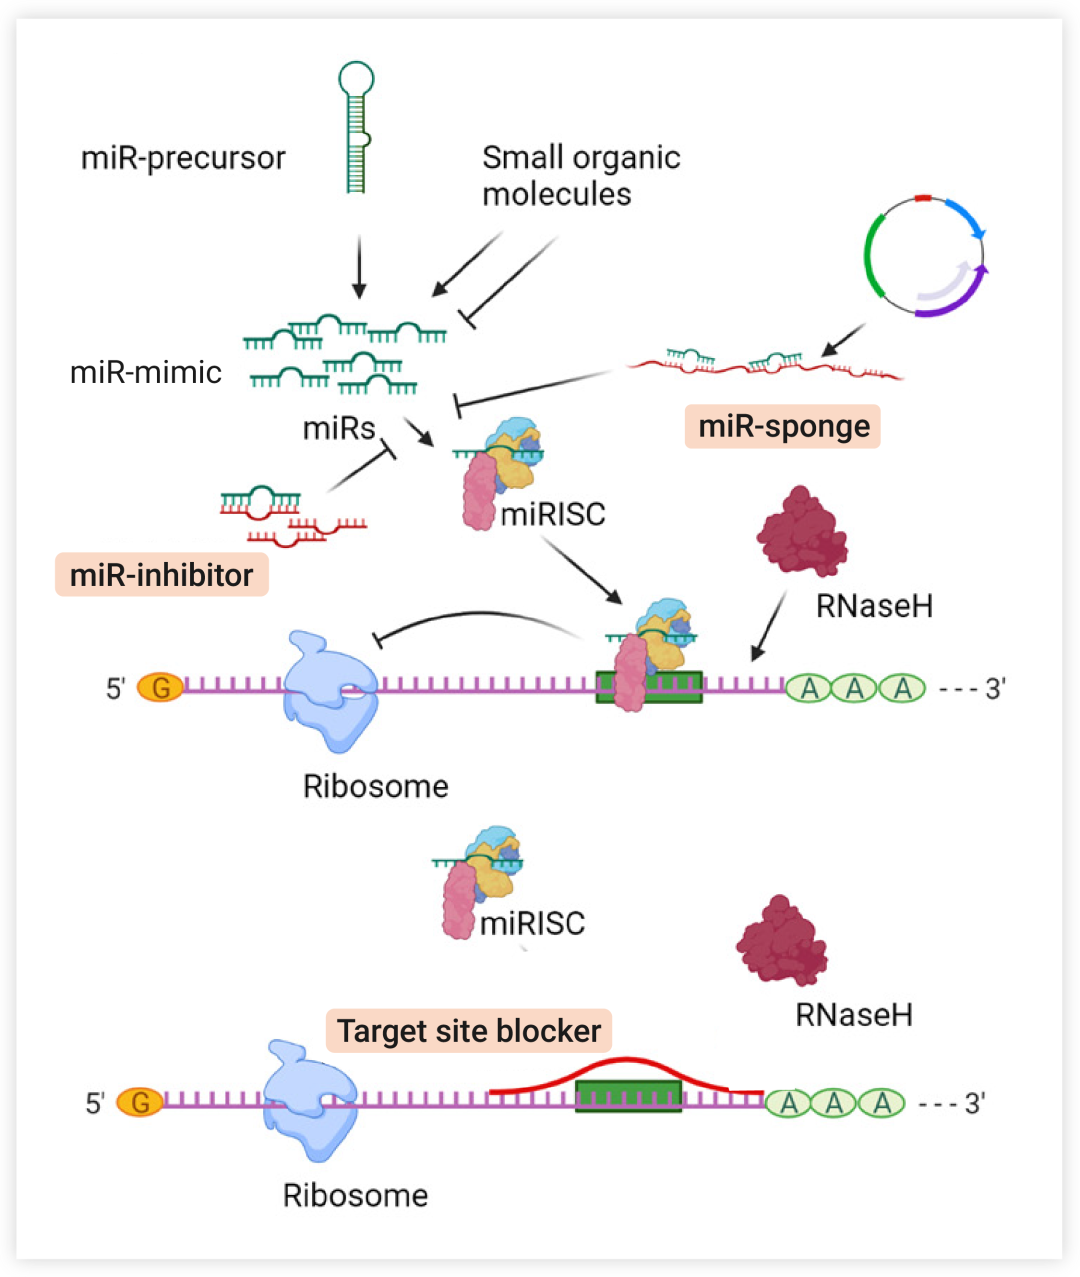 图 4. 调控 miRNA 的一般策略[7] miRNA 抑制剂或 miRNA 海绵可隔离 miRNA 并降低其用于 miRISC 装载的可用性; 靶位点阻断剂阻断 miRNA 与特定靶 mRNA 的结合位点, 导致 mRNA 特异性抑制 miRNA 效应。